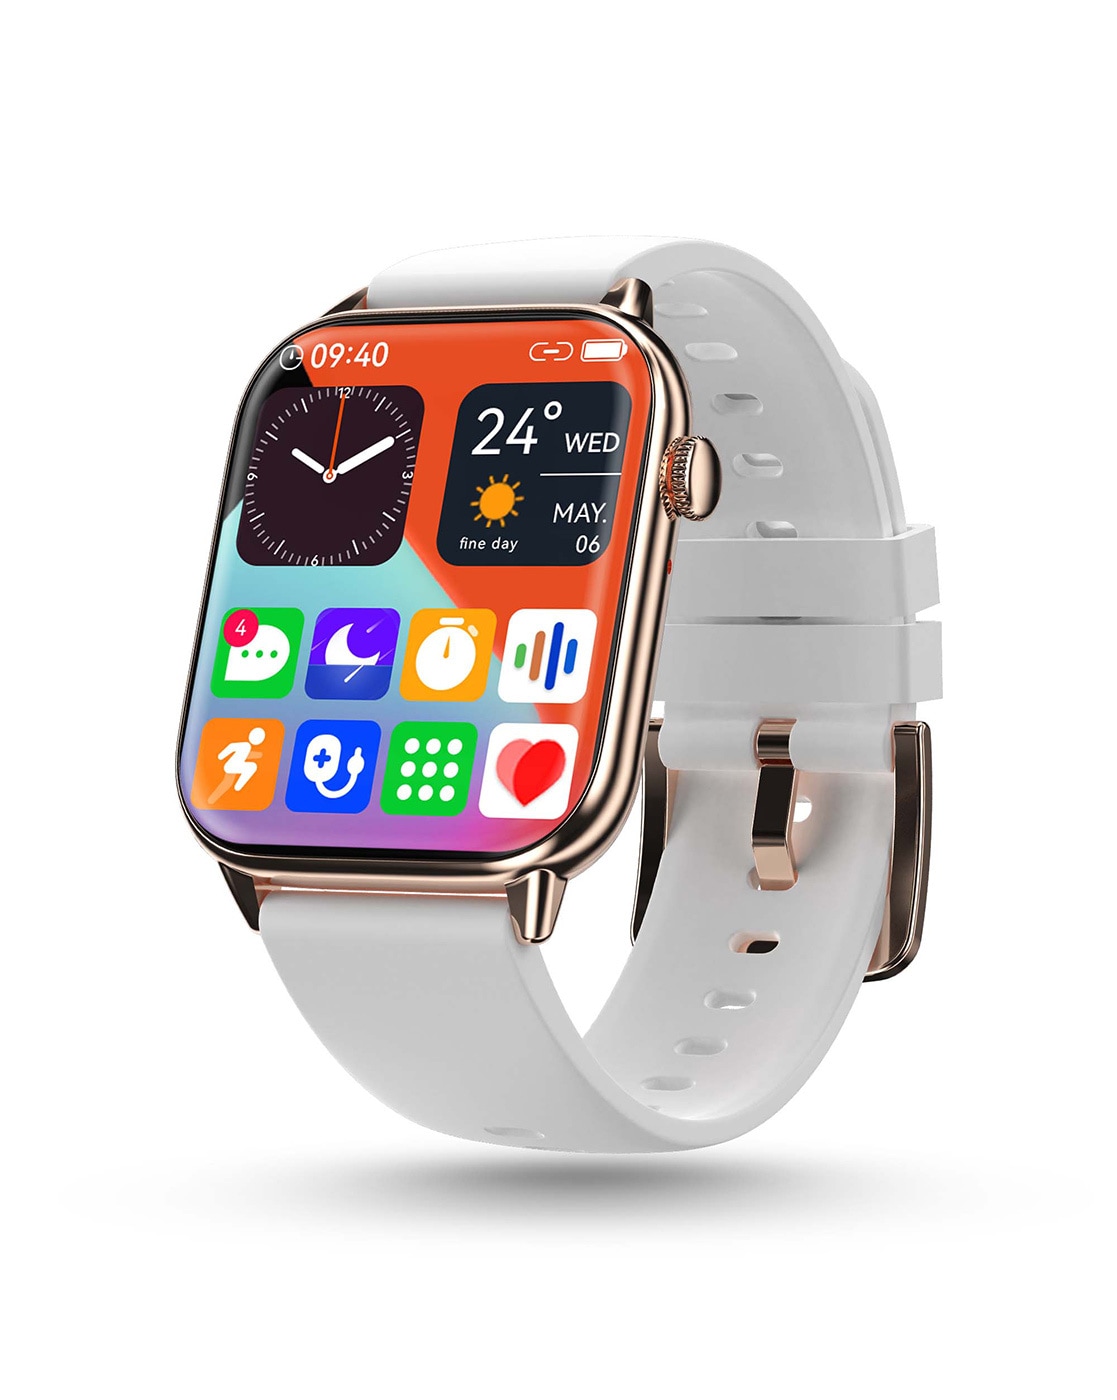 Buy Amazfit Bip 3 Smart Watch @ ₹2999.0 | Amazfit Official Store